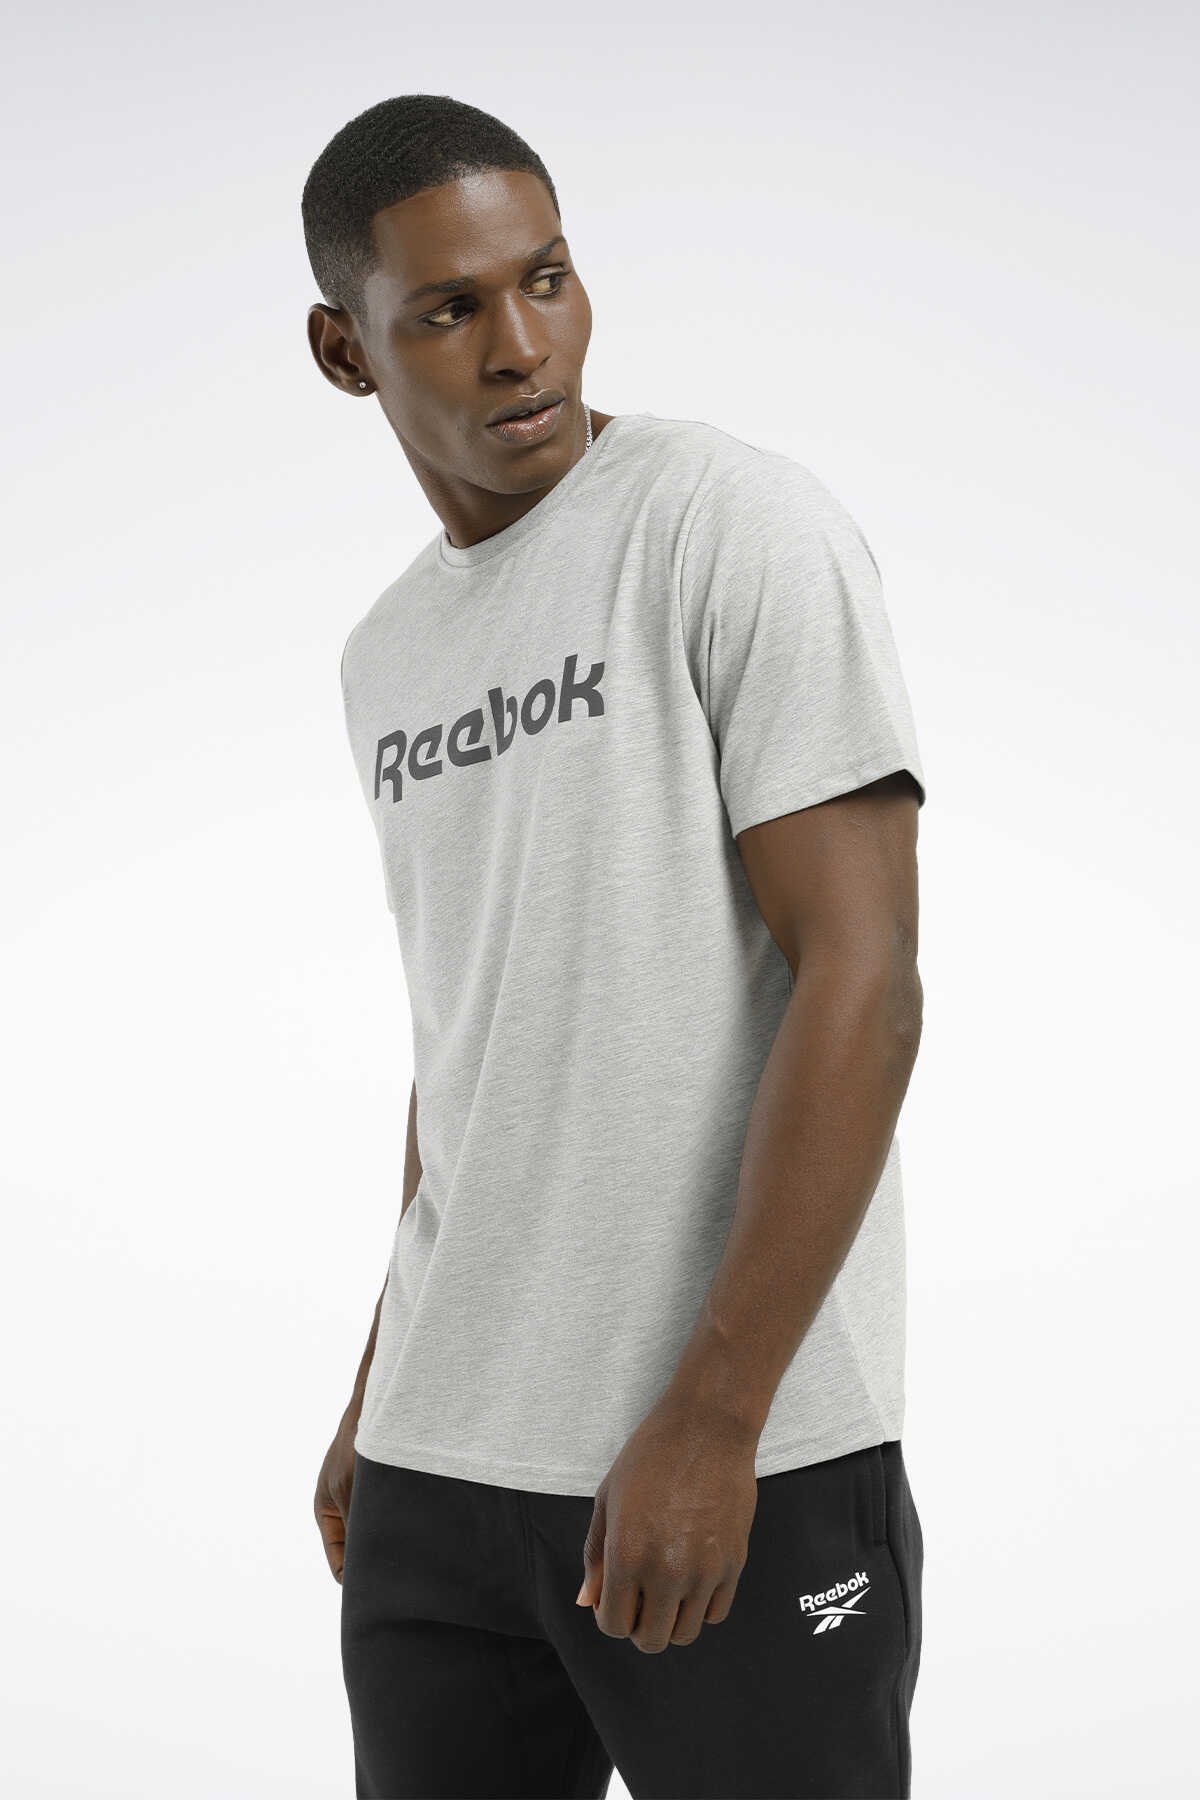 Reebok - Reebok Linear Re Erkek T-Shirt Gri_Melanj_0